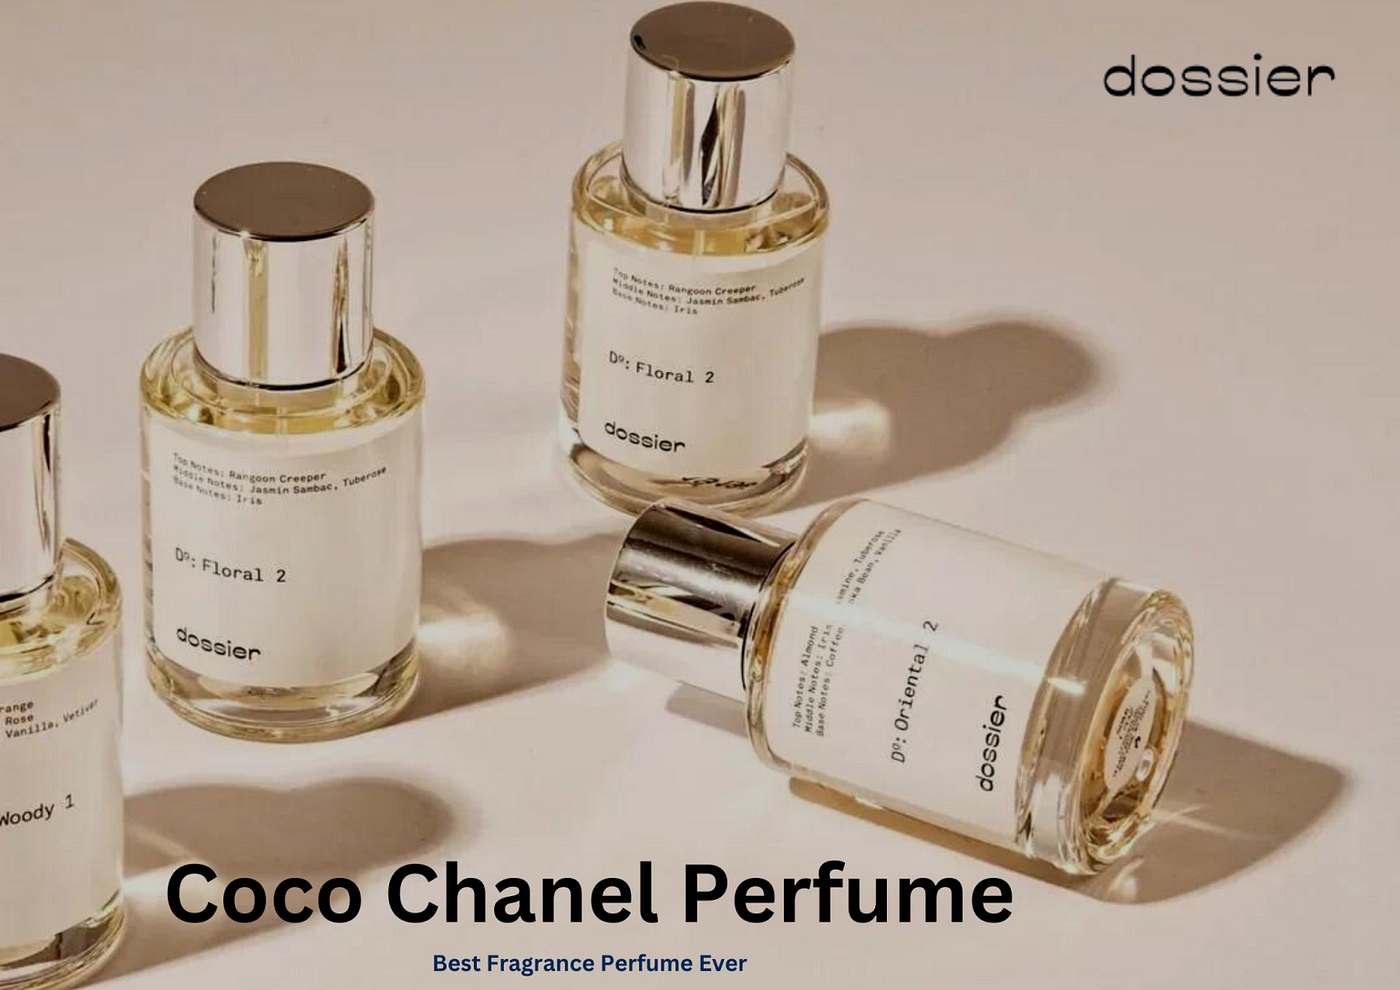 dossier perfume coco chanel